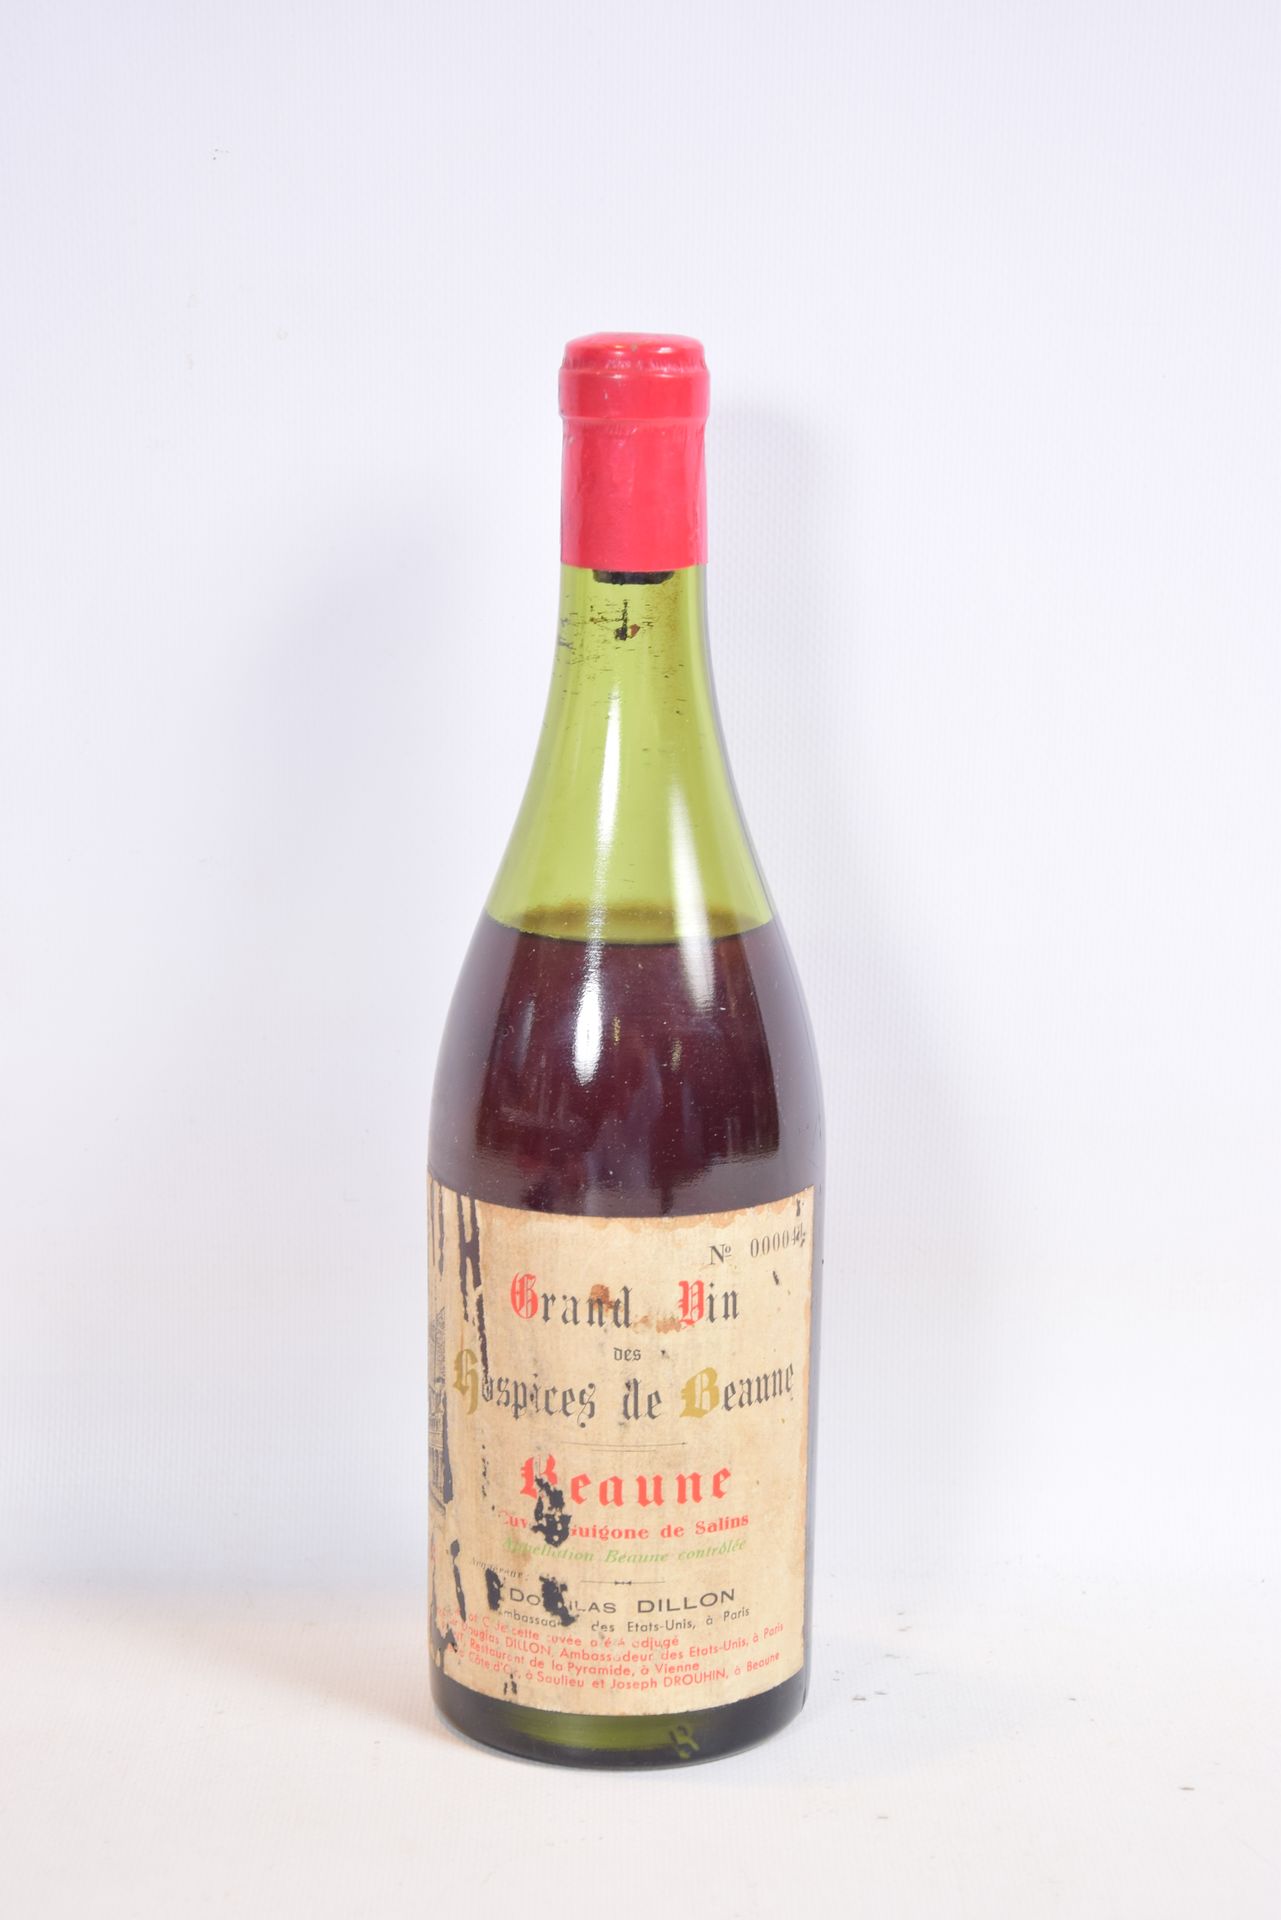 Null 1 Blle	BEAUNE - Hospices de Beaune - Cuvée Guigone de Salins adjugée à		195&hellip;